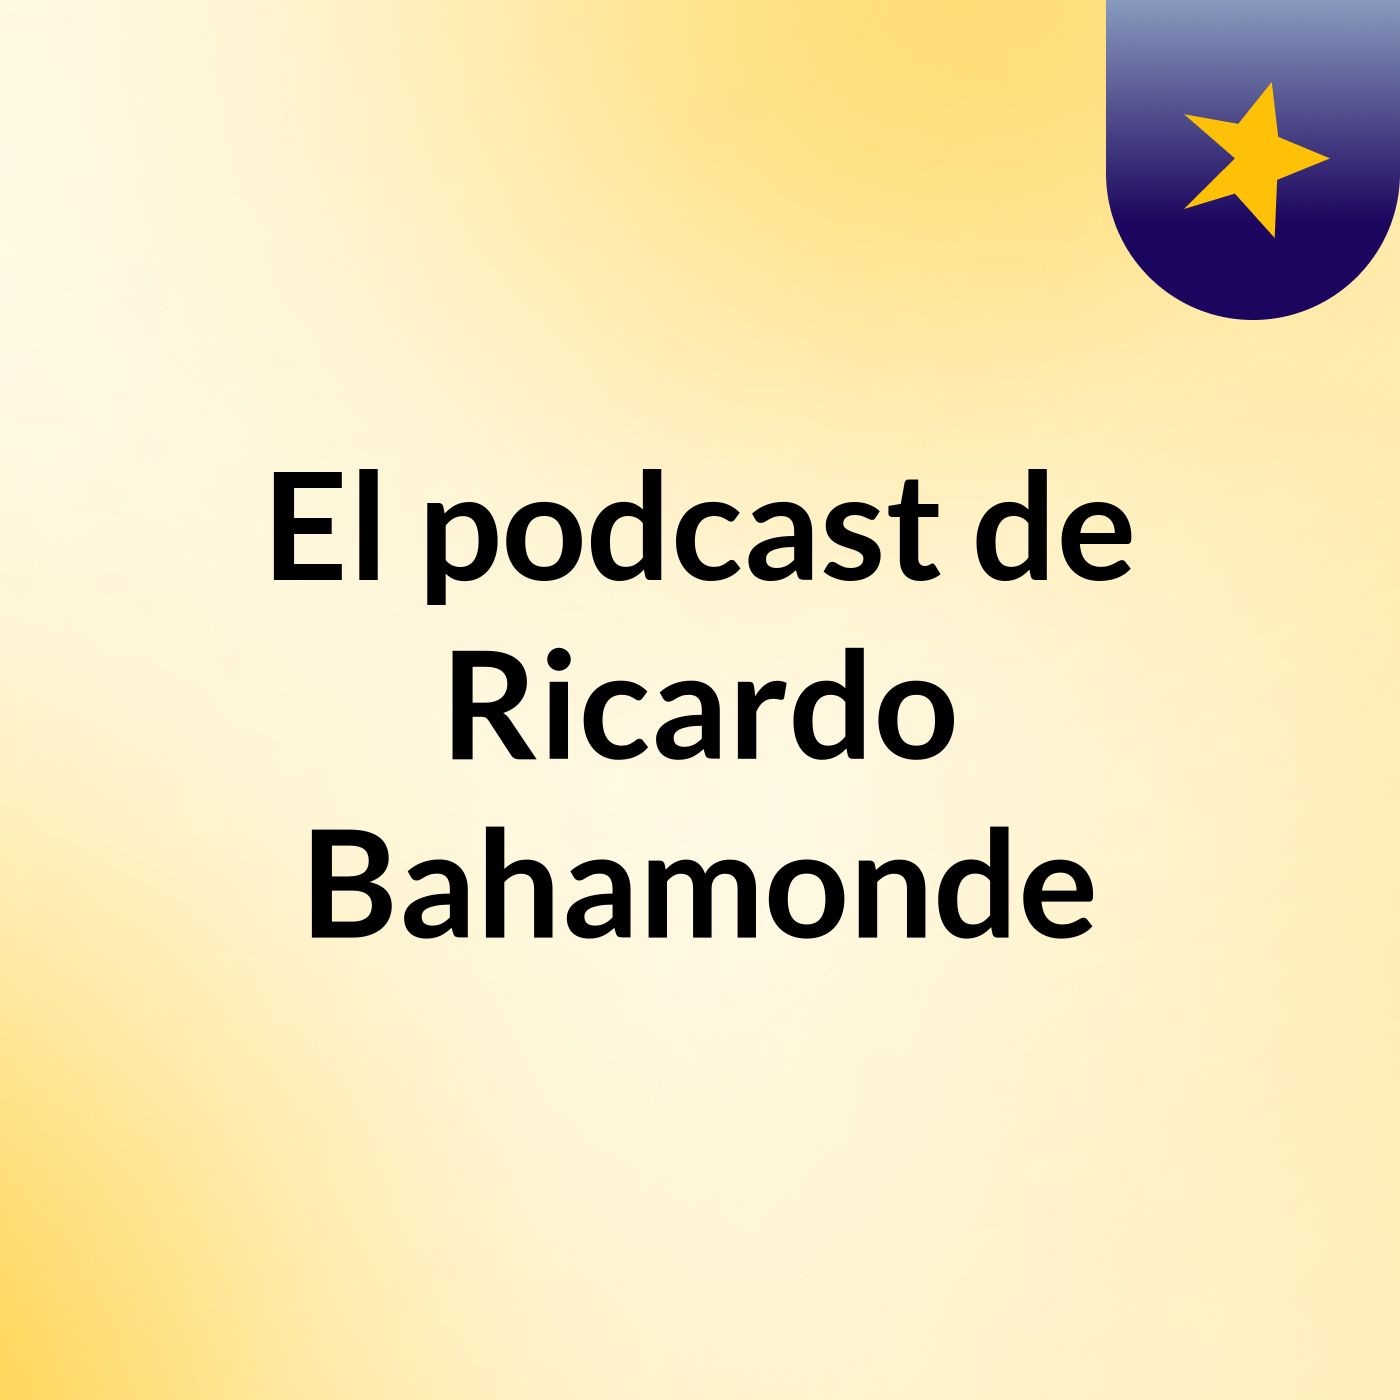 El podcast de Ricardo Bahamonde